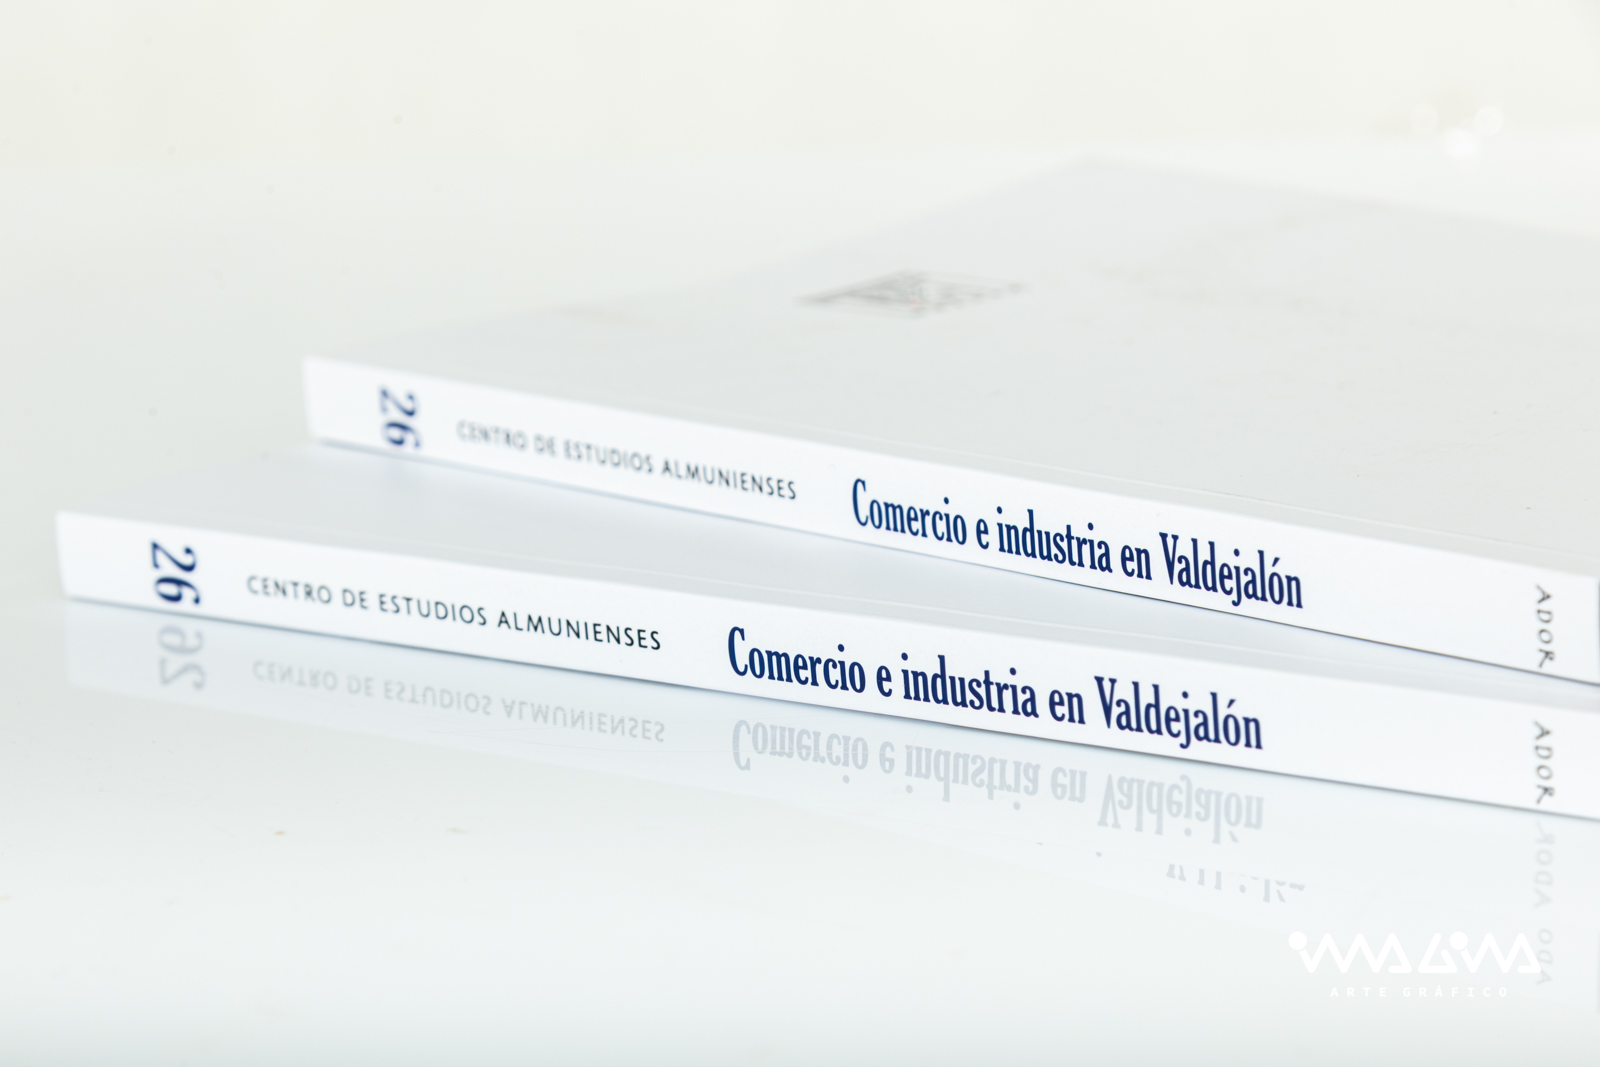 Ador 26 - Comercio e Industria en Valdejalón - CEA - Imagina Arte Gráfico-6